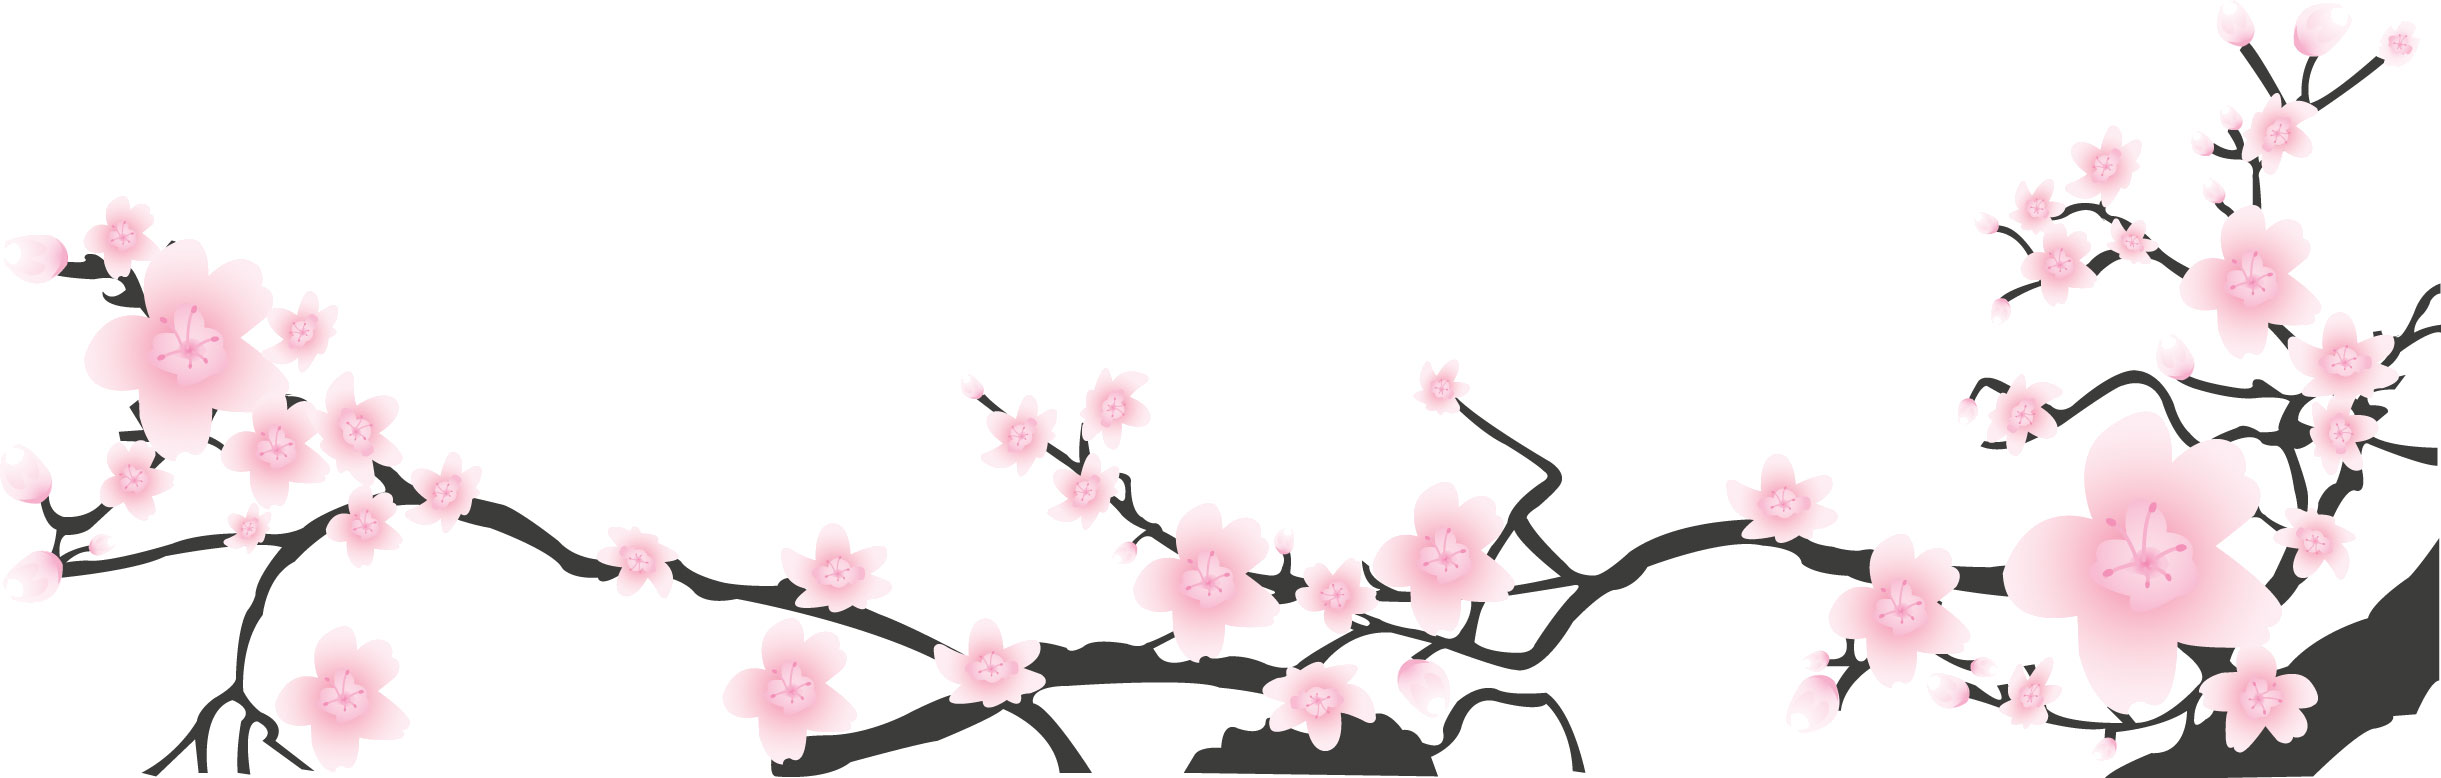 リアルな花のイラスト フリー素材 角 コーナー用no 1545 梅 桃 桜 枝